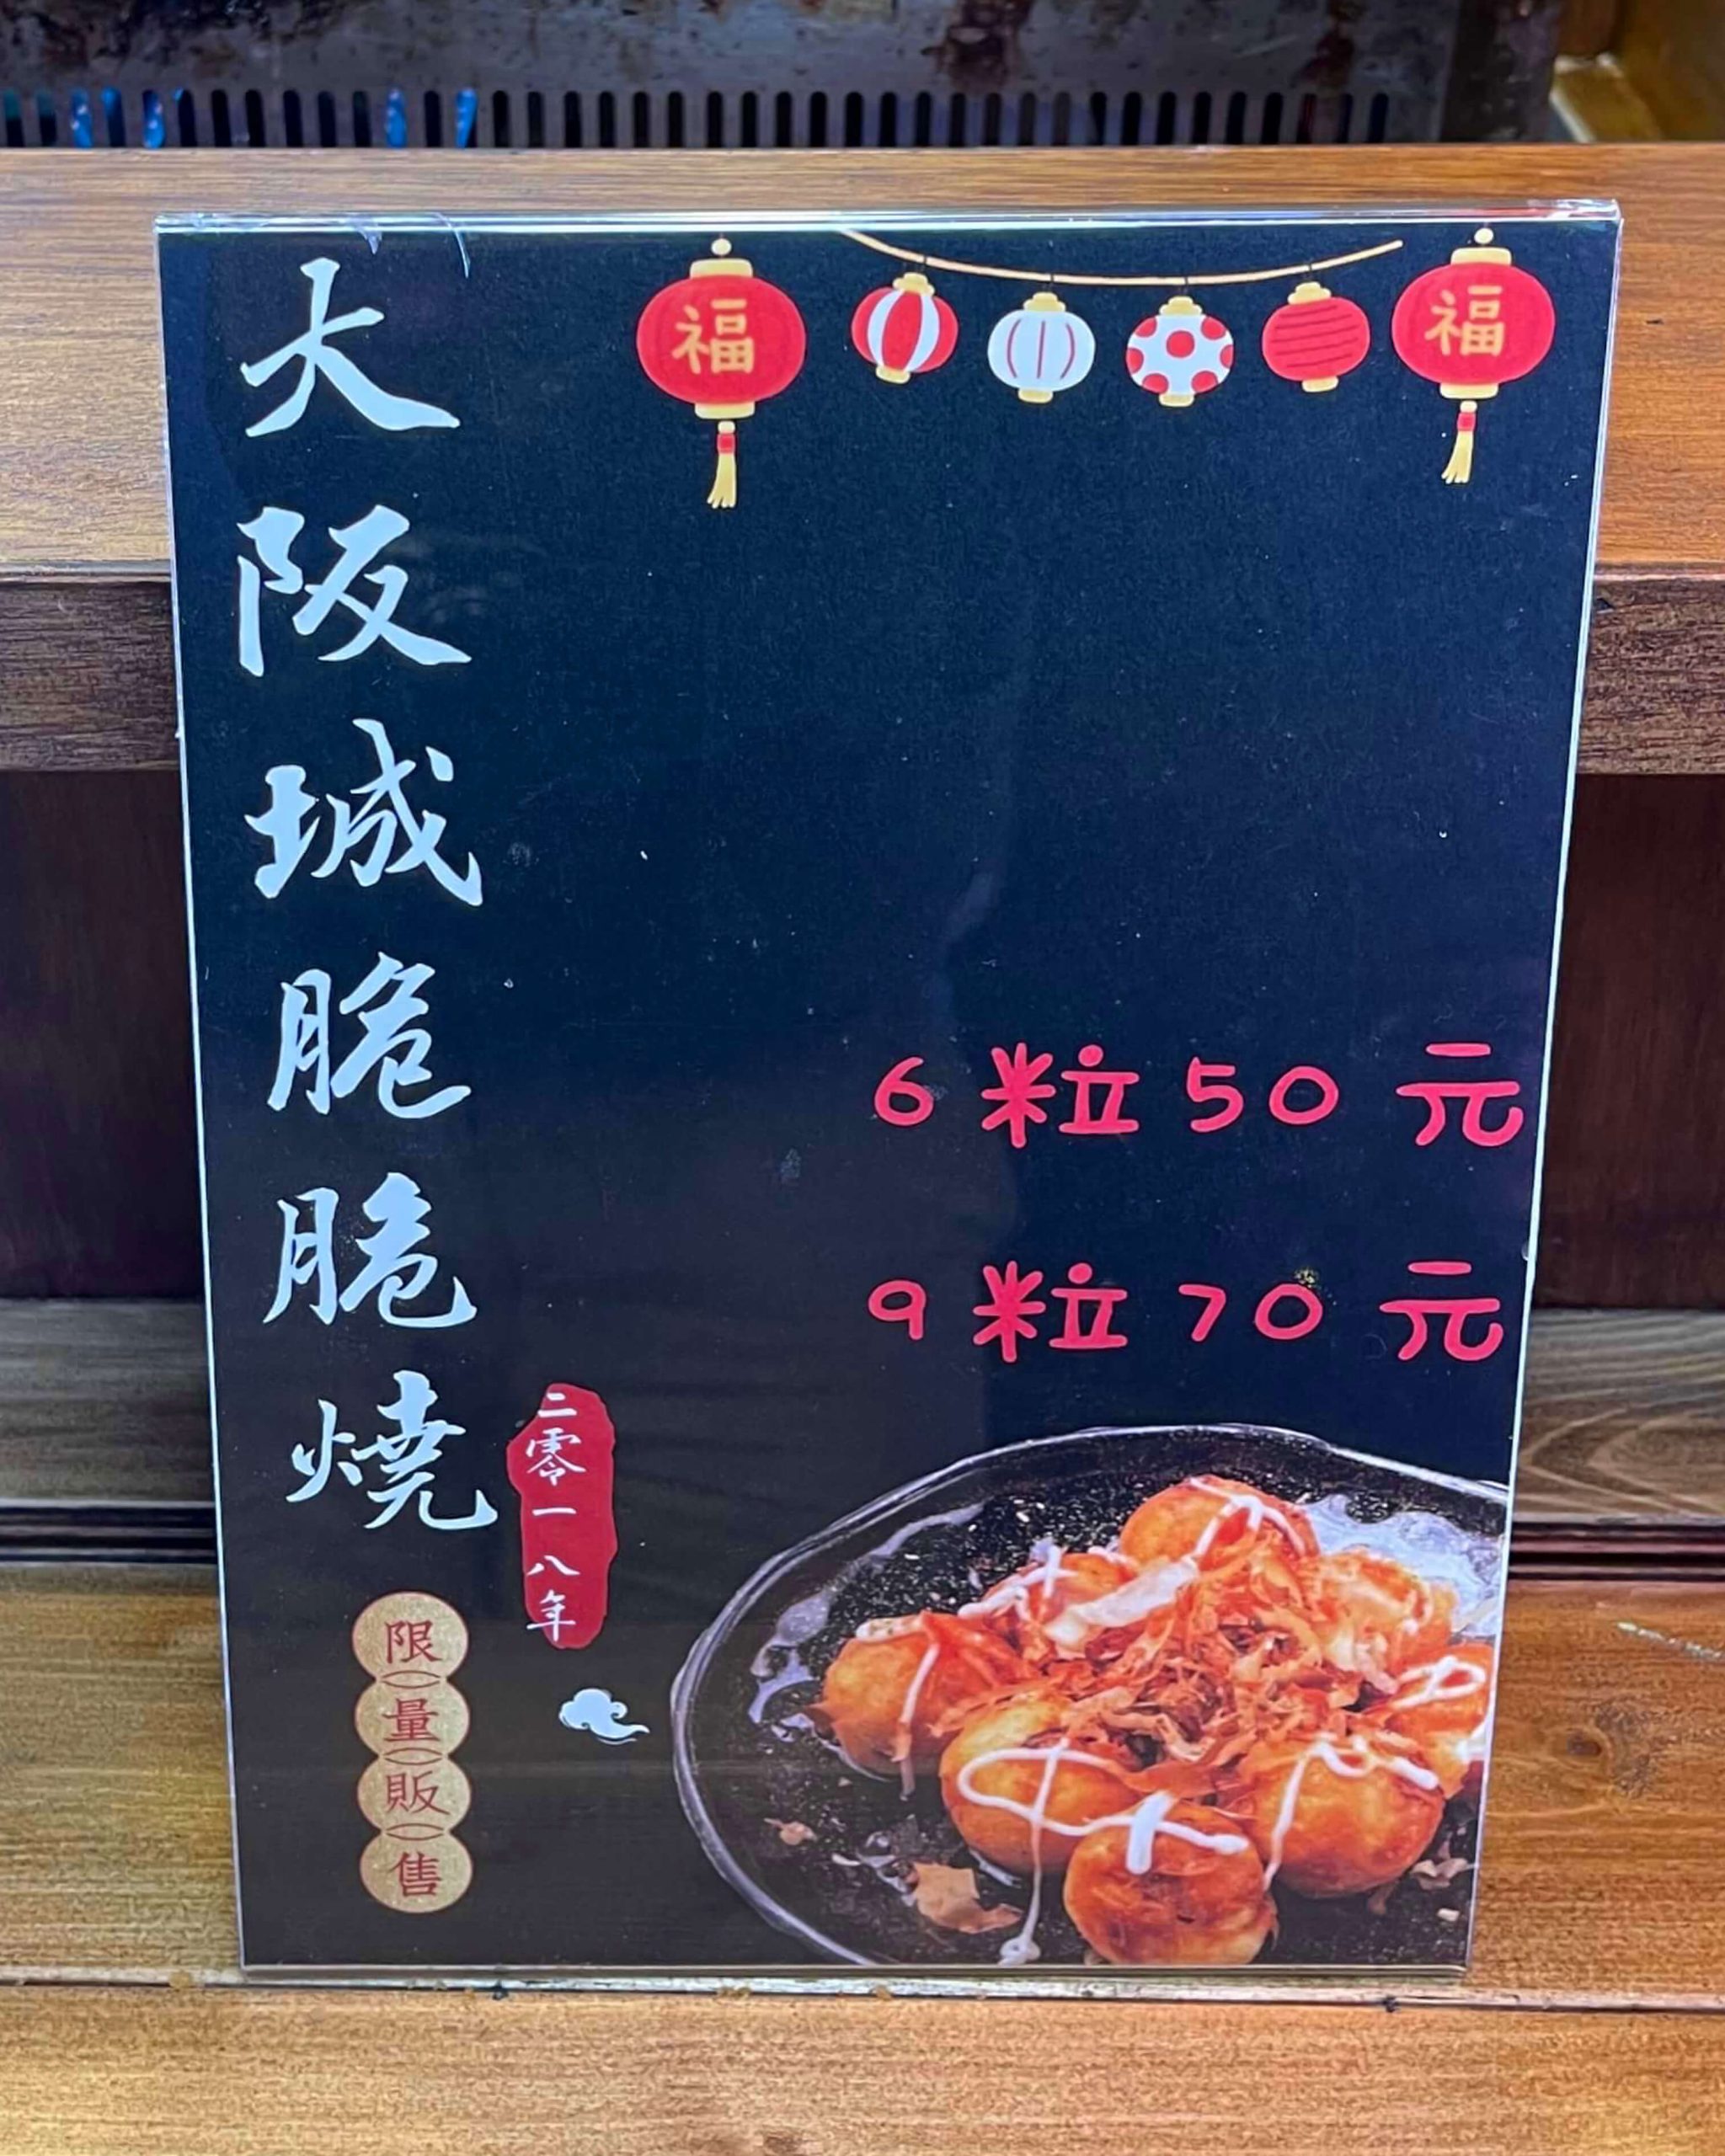 大阪城章魚燒菜單MENU